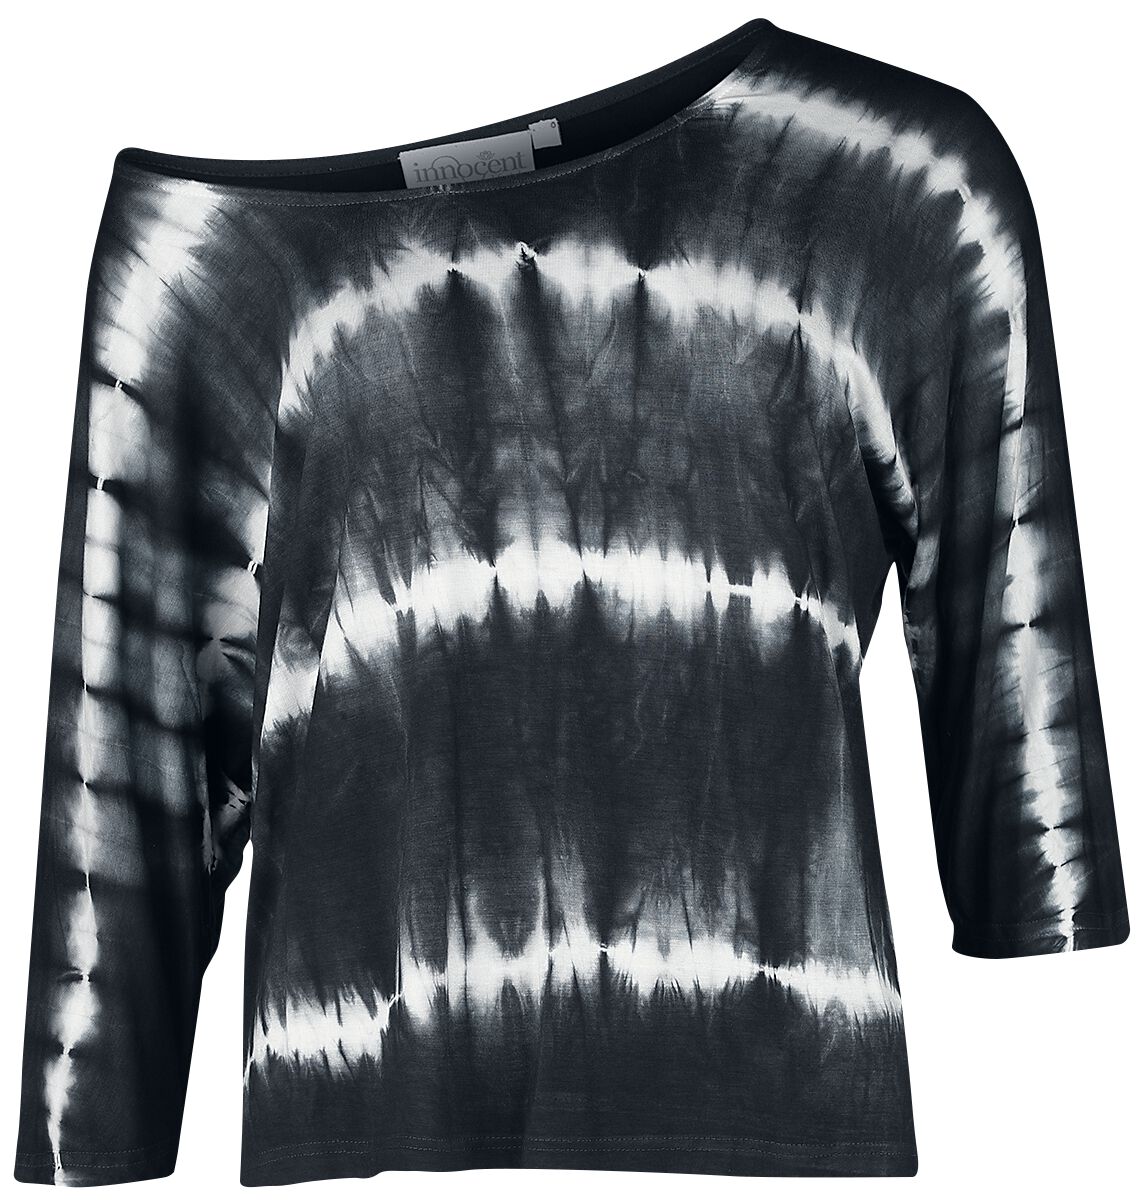 Innocent - Gothic Langarmshirt - Solana Top - XS bis 4XL - für Damen - Größe 4XL - schwarz/weiß